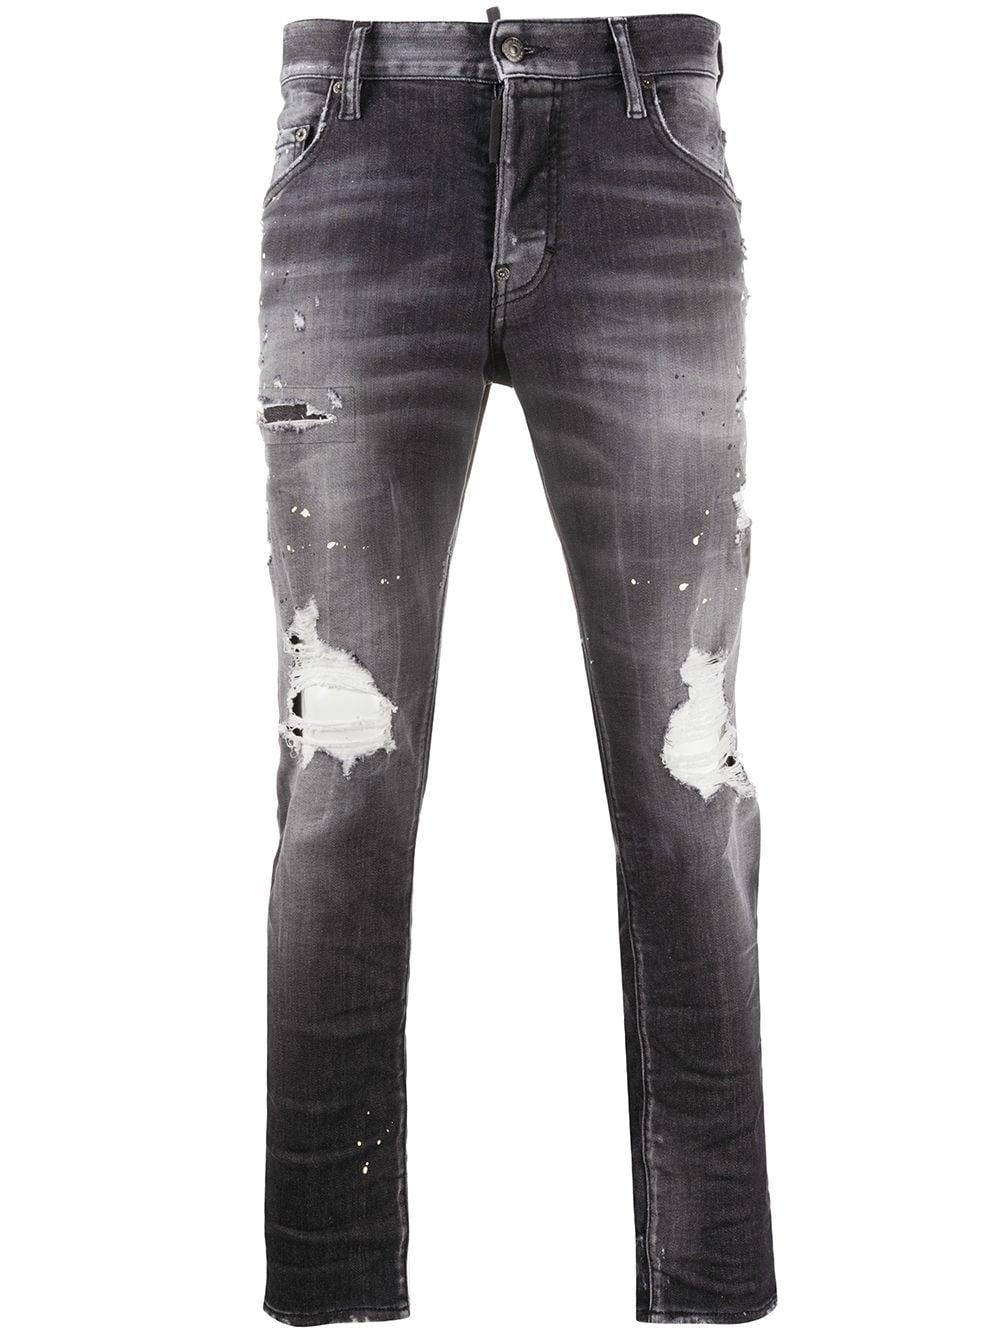 DSquared² Denim Skater Ripped Skinny Jeans in Black for Men - Save 25% ...